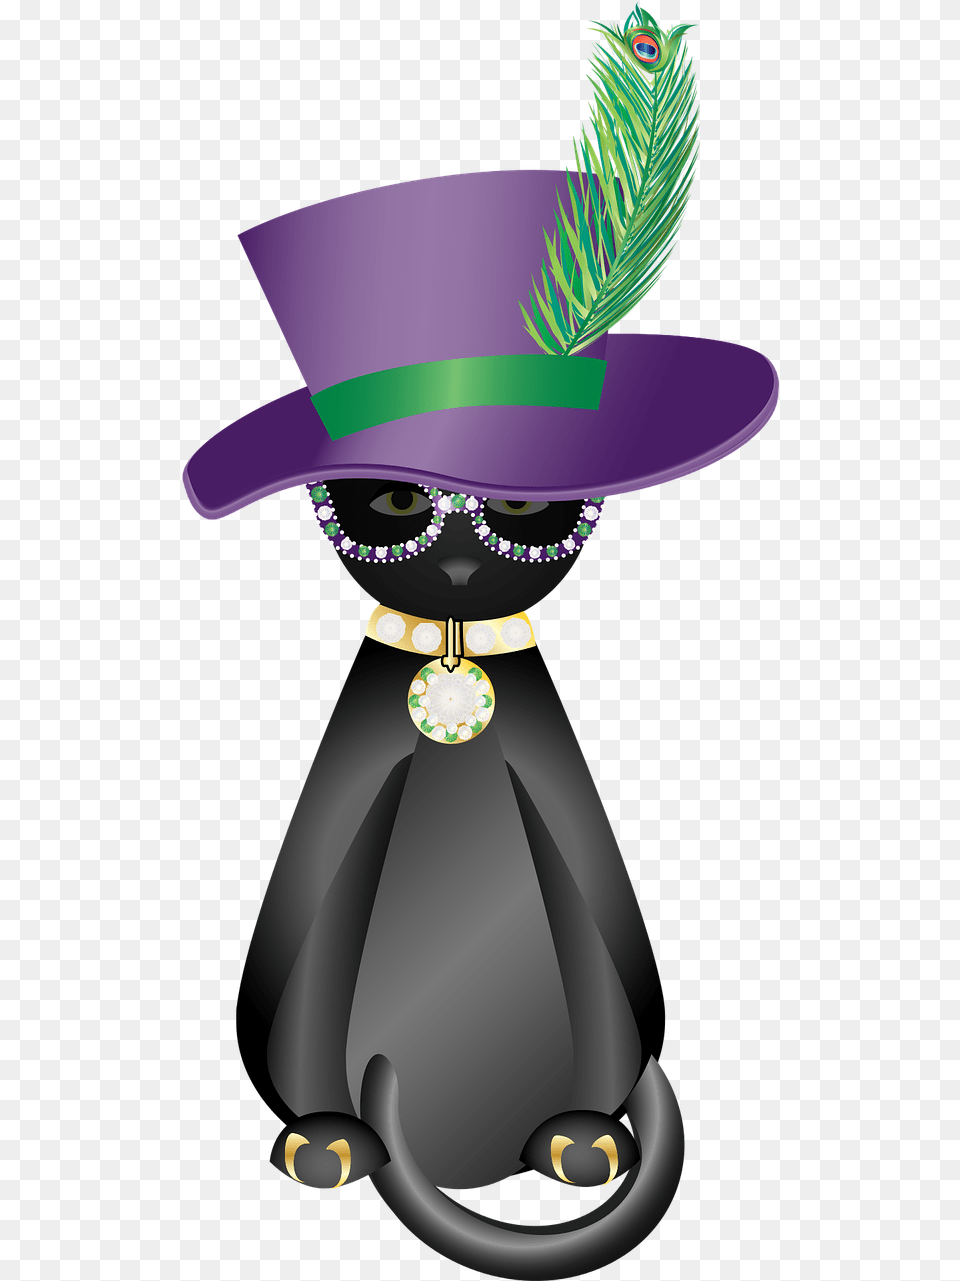 Graphic Pimp Cat Black Cat Cat Pimp, Clothing, Hat, Person, Face Free Png